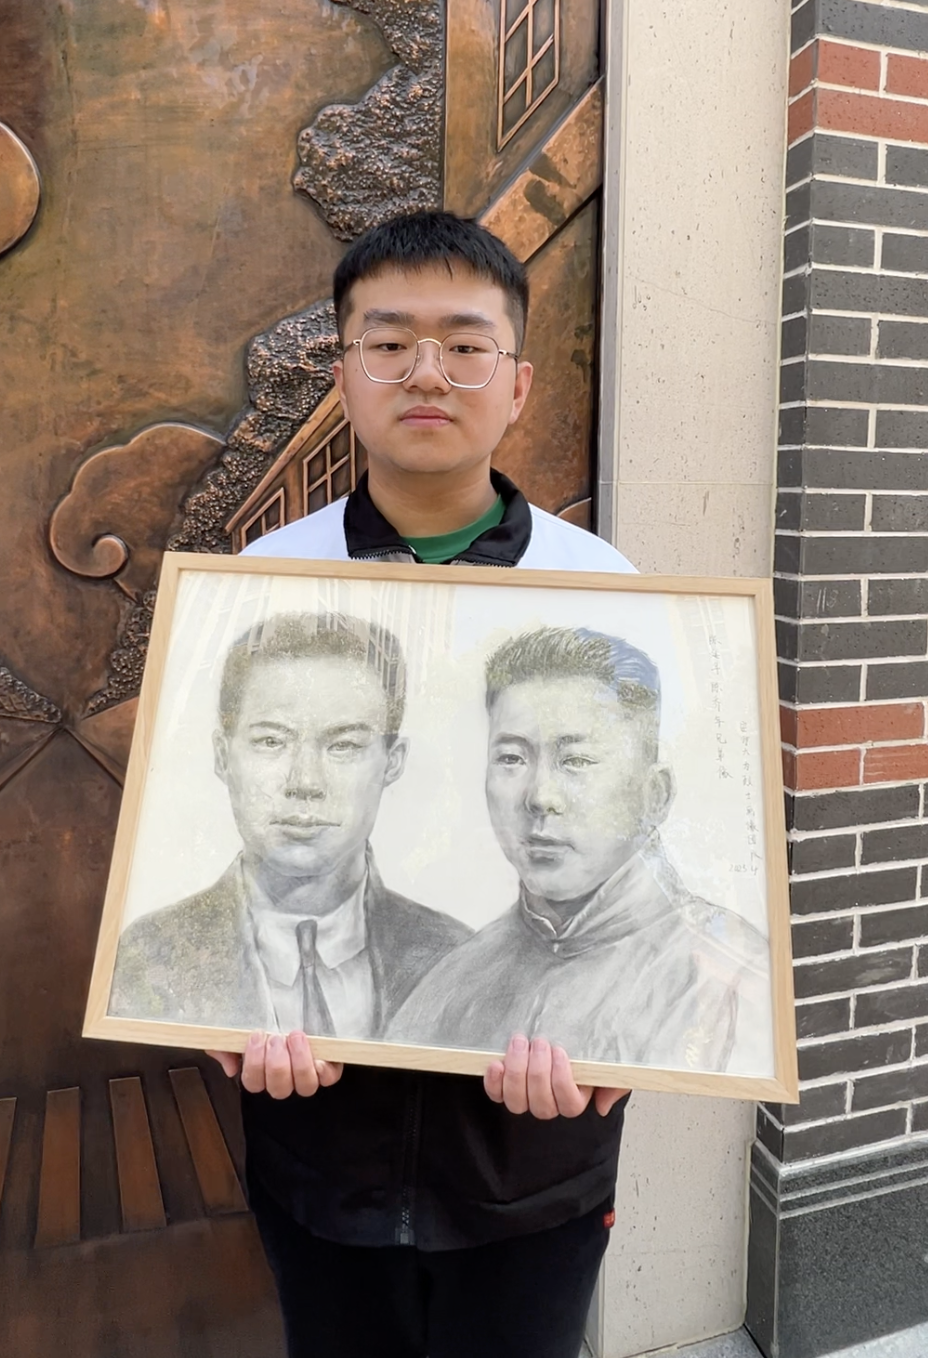 魏子洋和他画的两位烈士合照。新华社记者 赵金正 摄